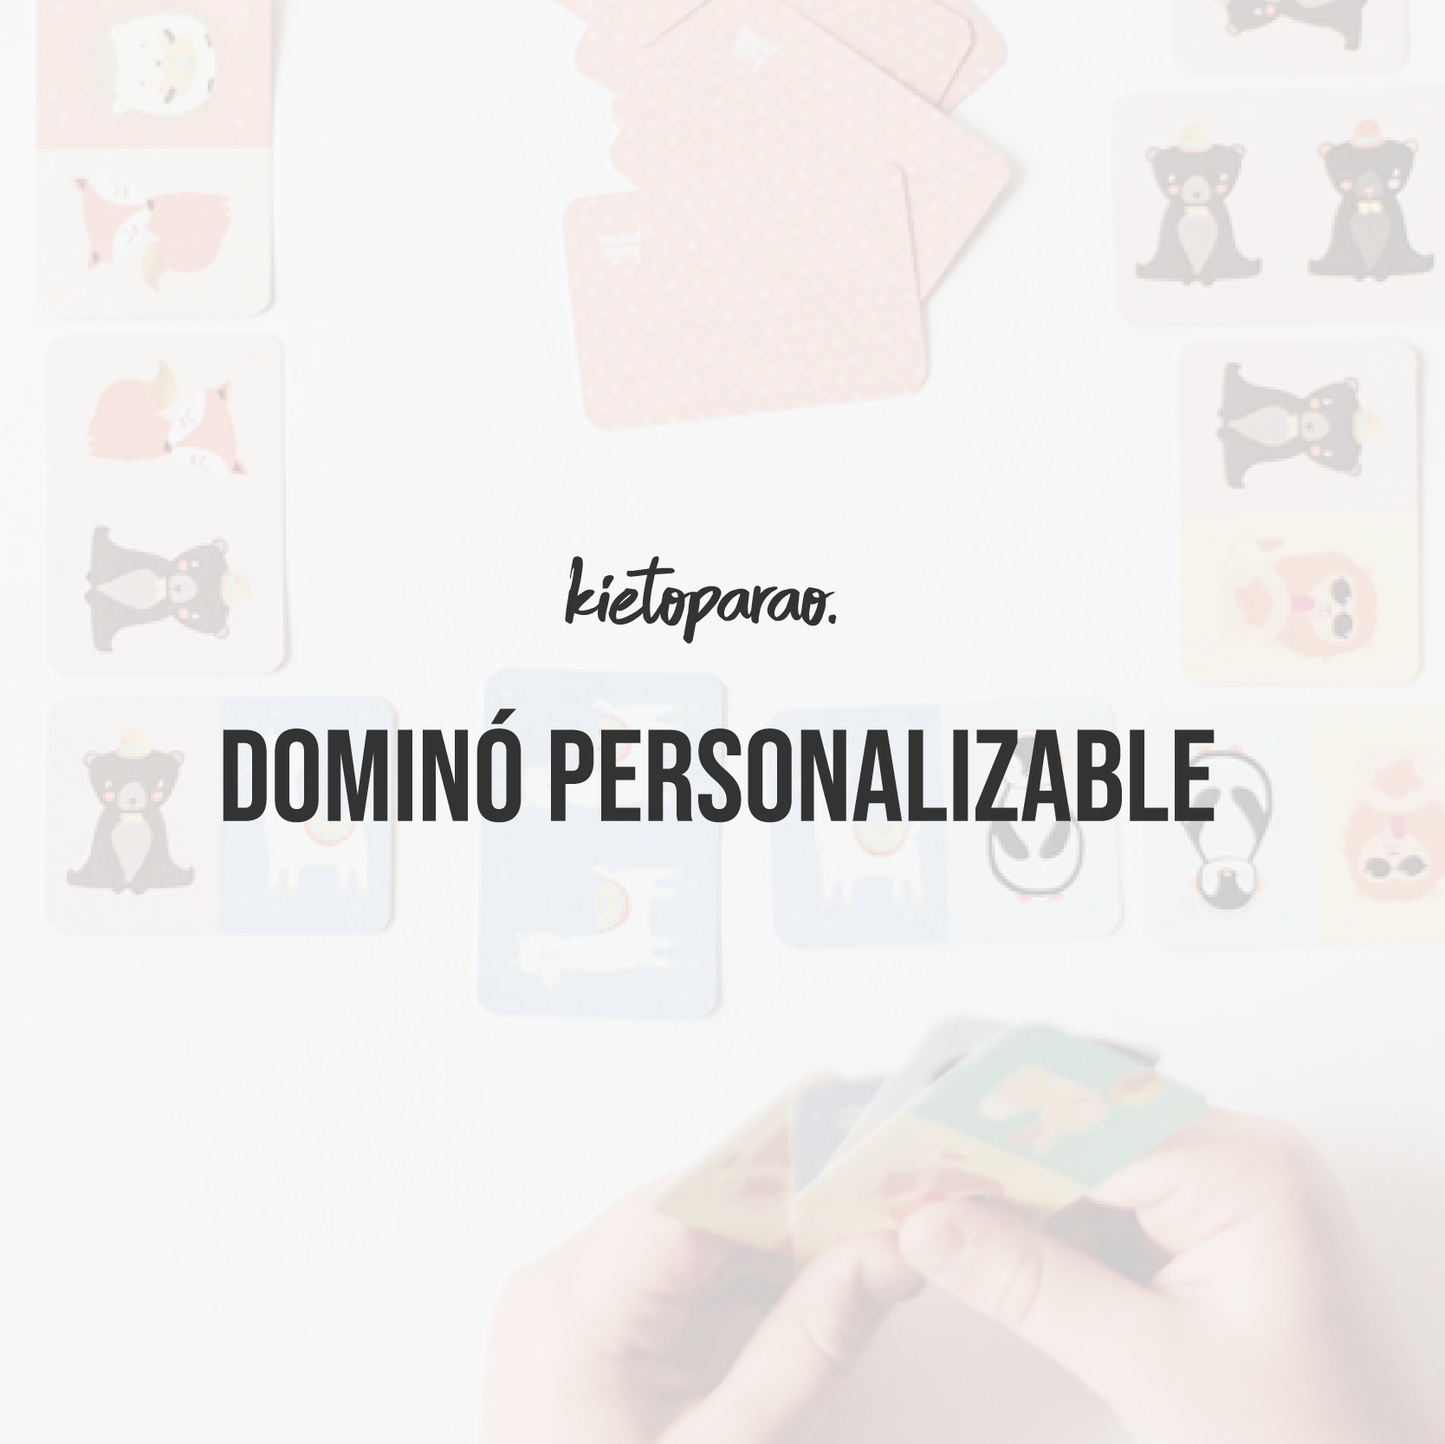 Domino personalizable